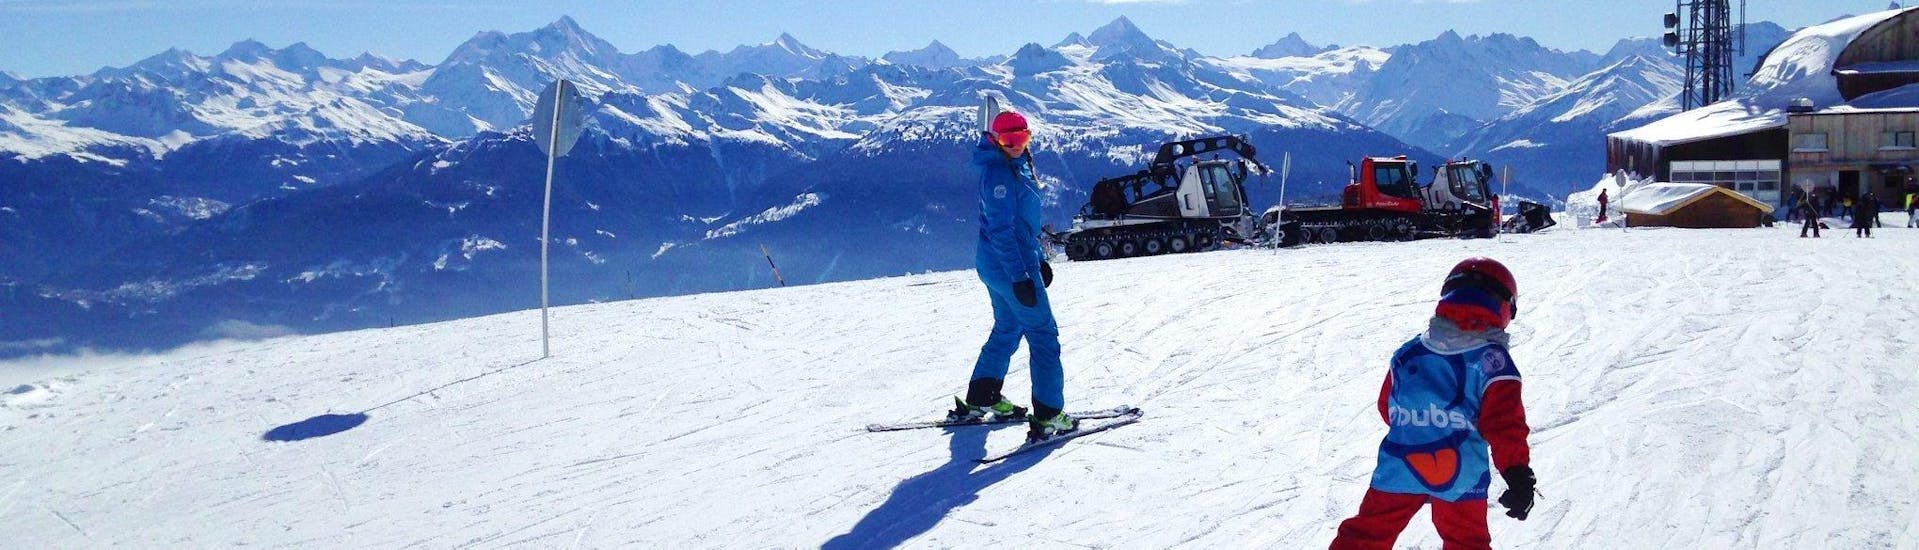 Cours particulier de ski Enfants (5-15 ans).